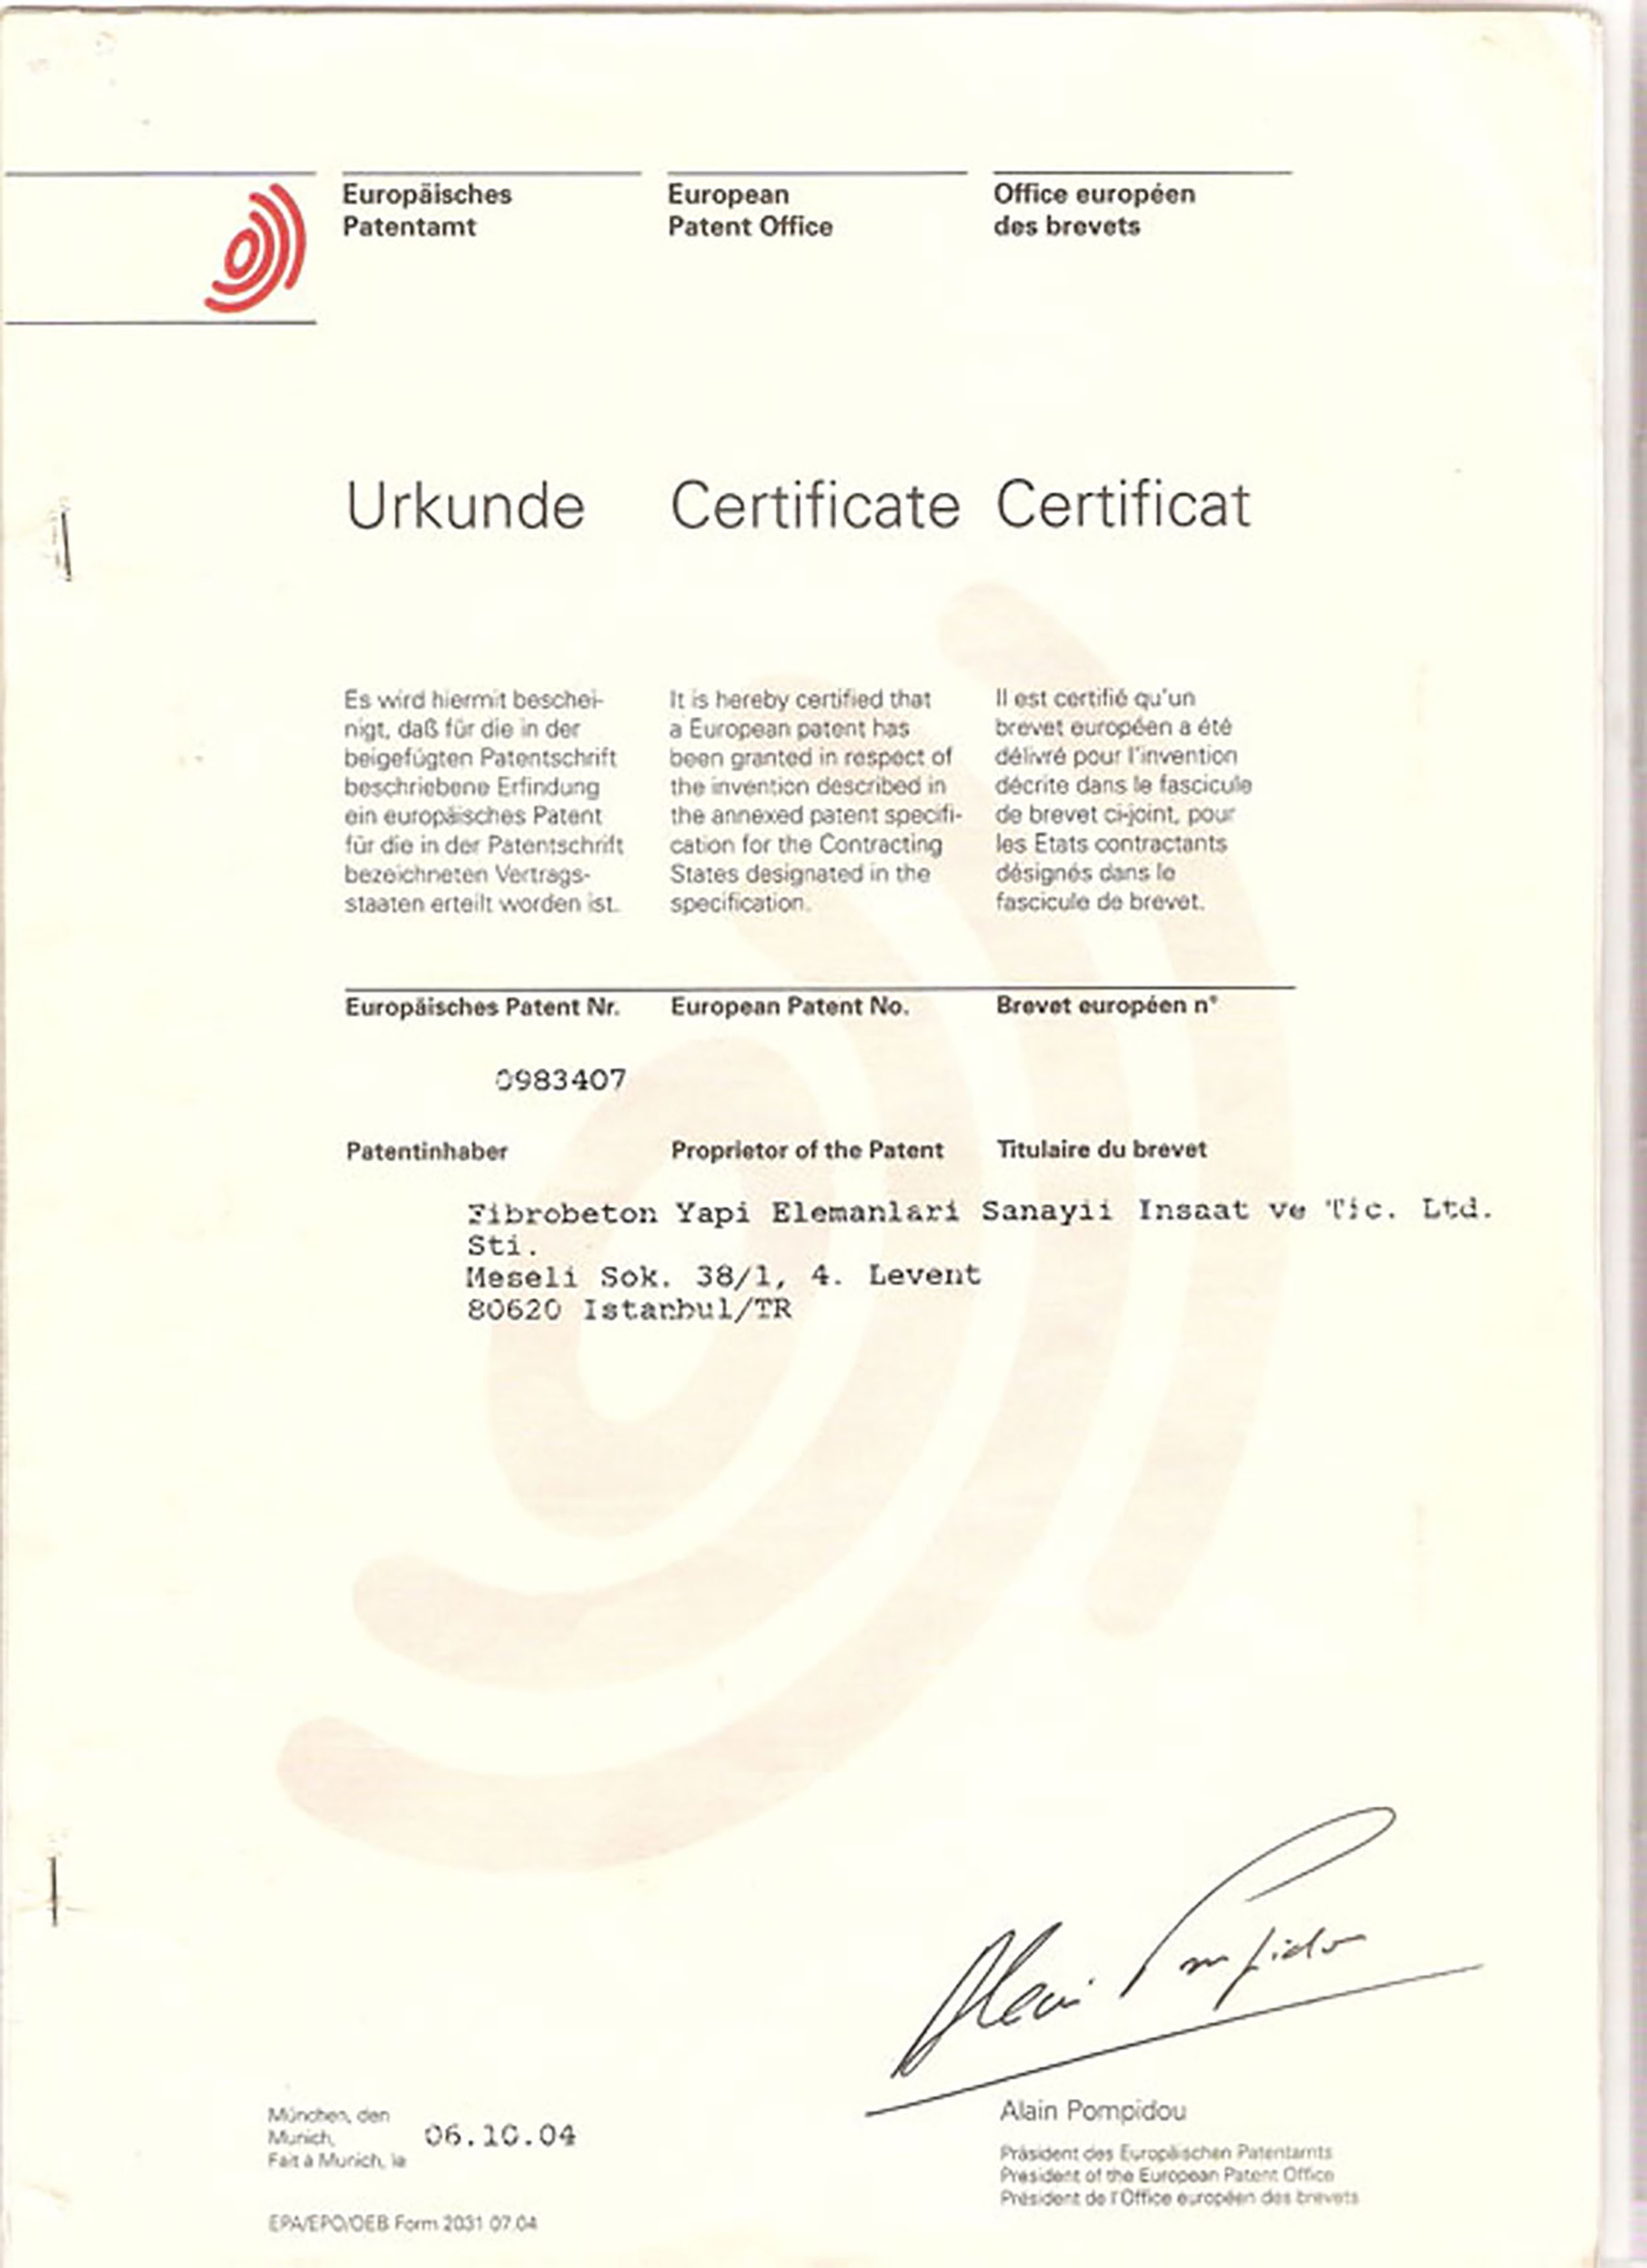 fibrobeton sertifika